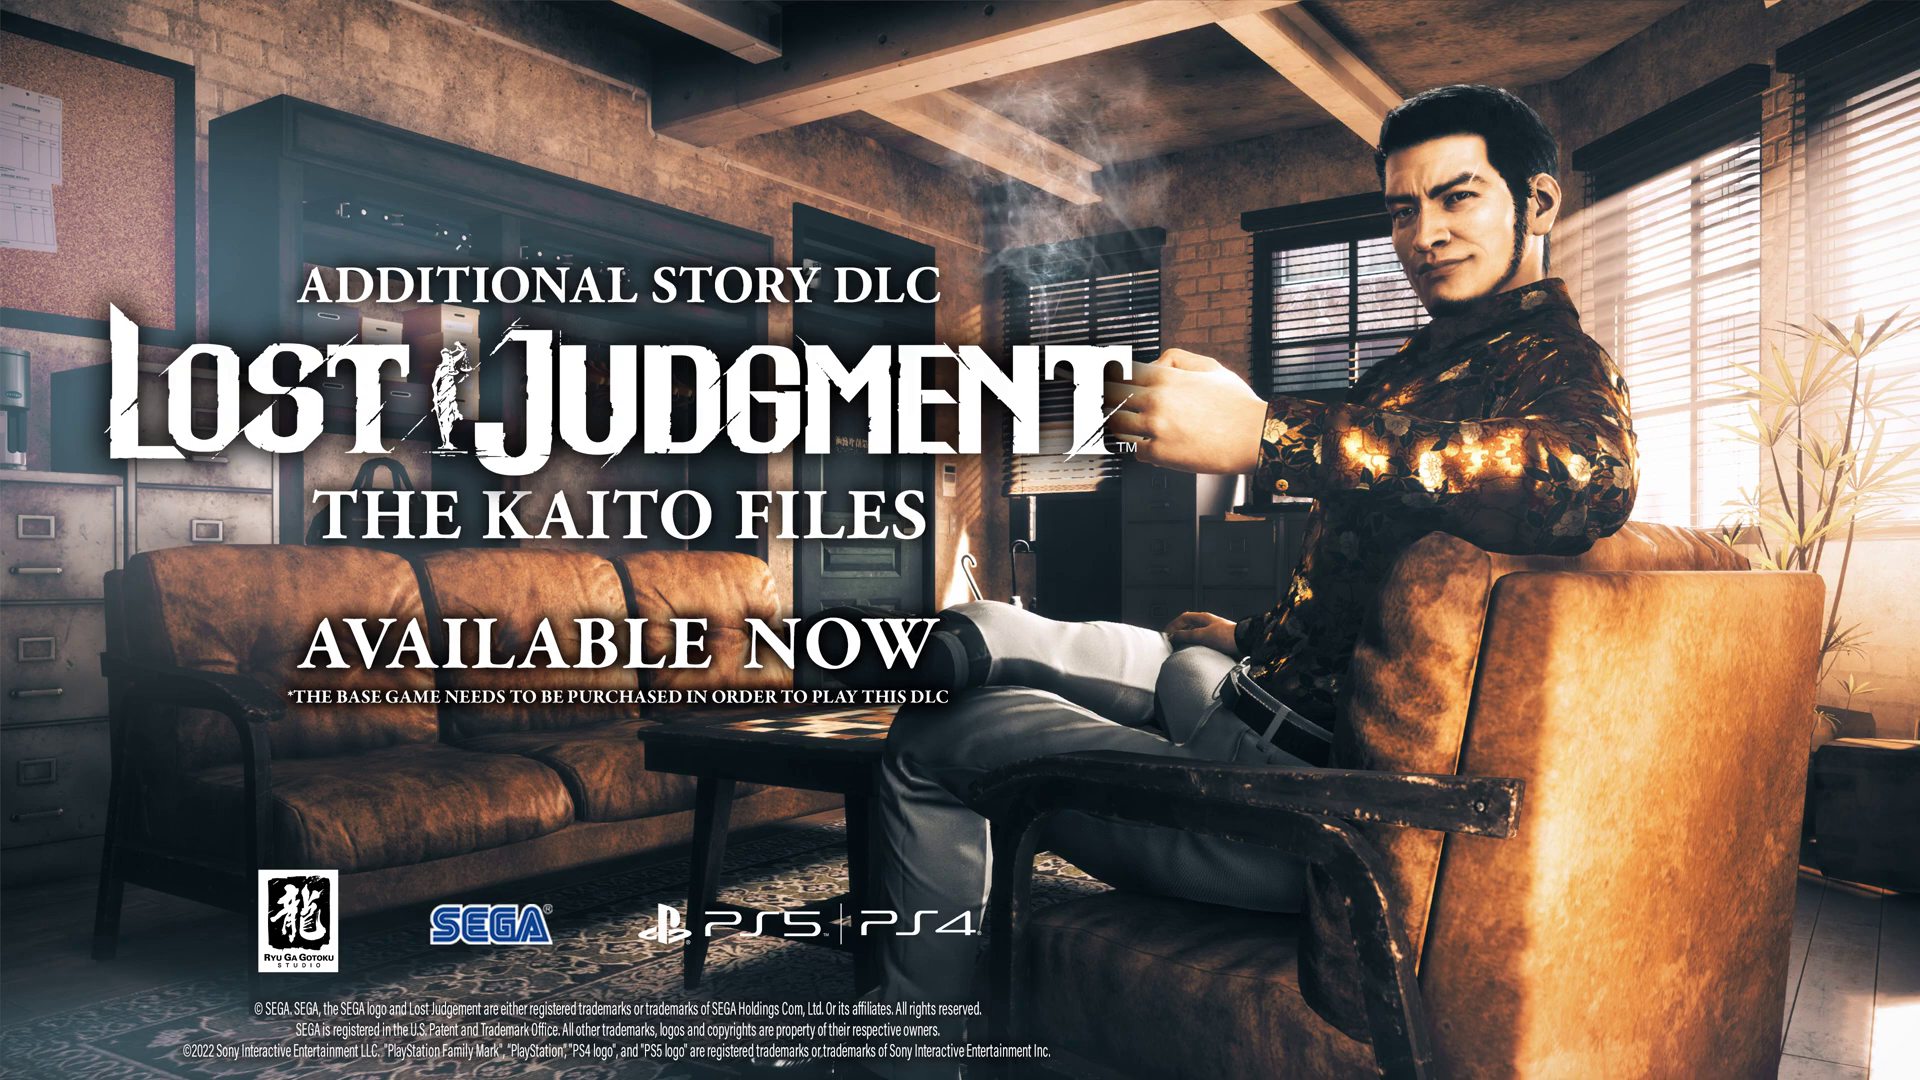 The Kaito Files